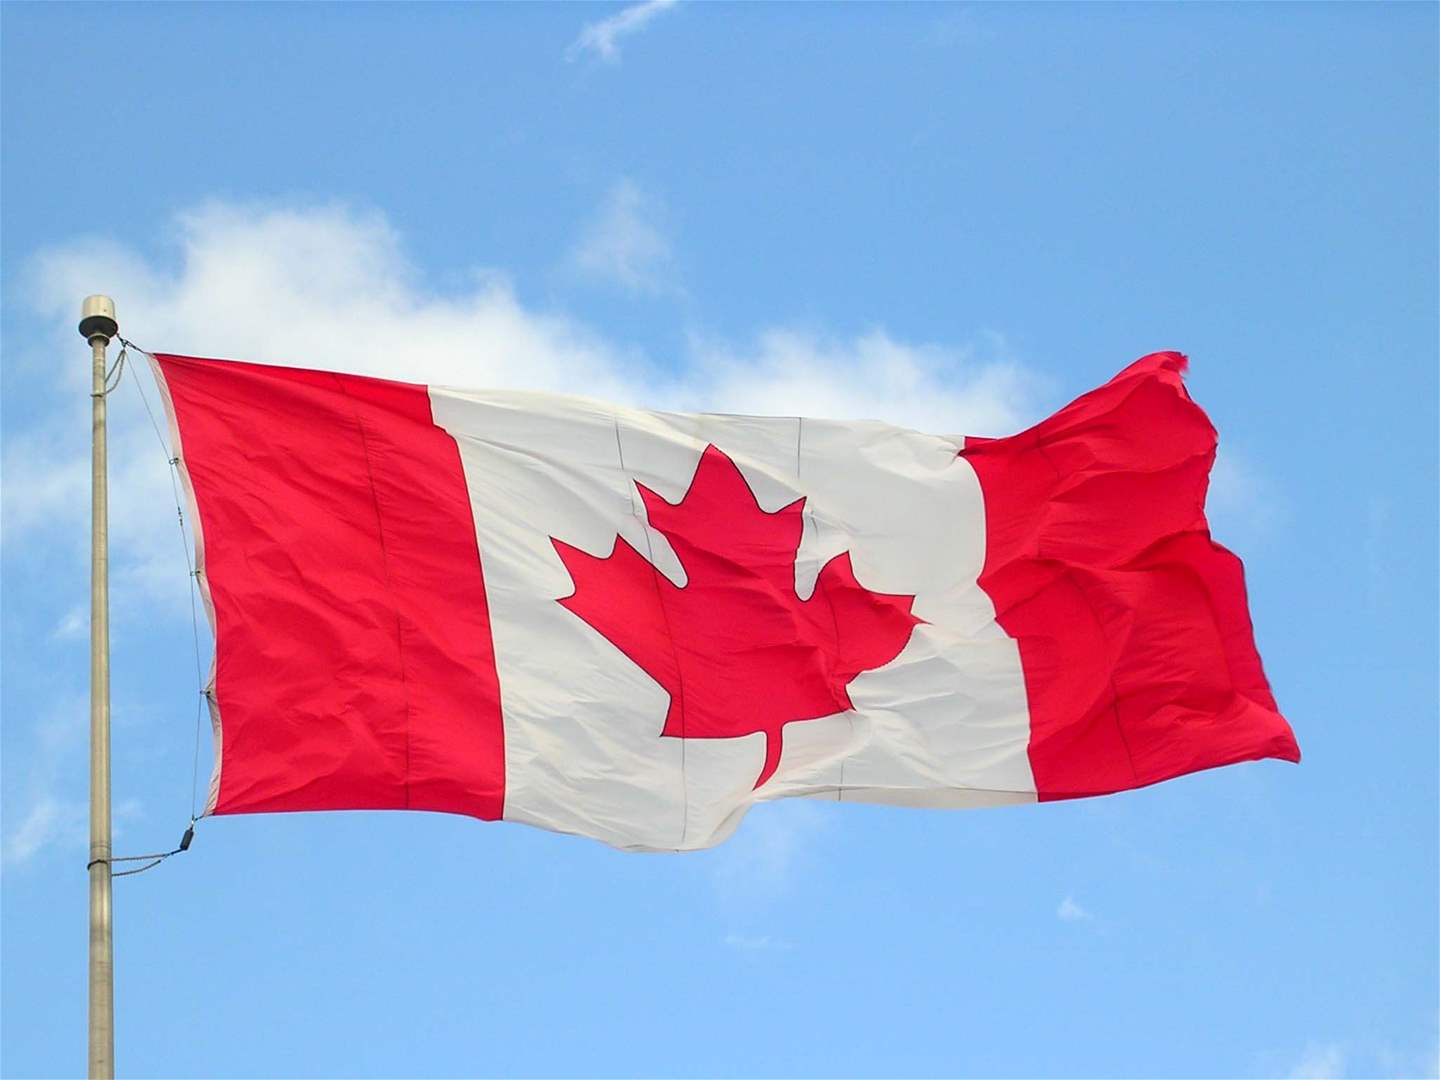 كندا تعلّق المساعدات المالية المخصصة لحكومة النيجر 